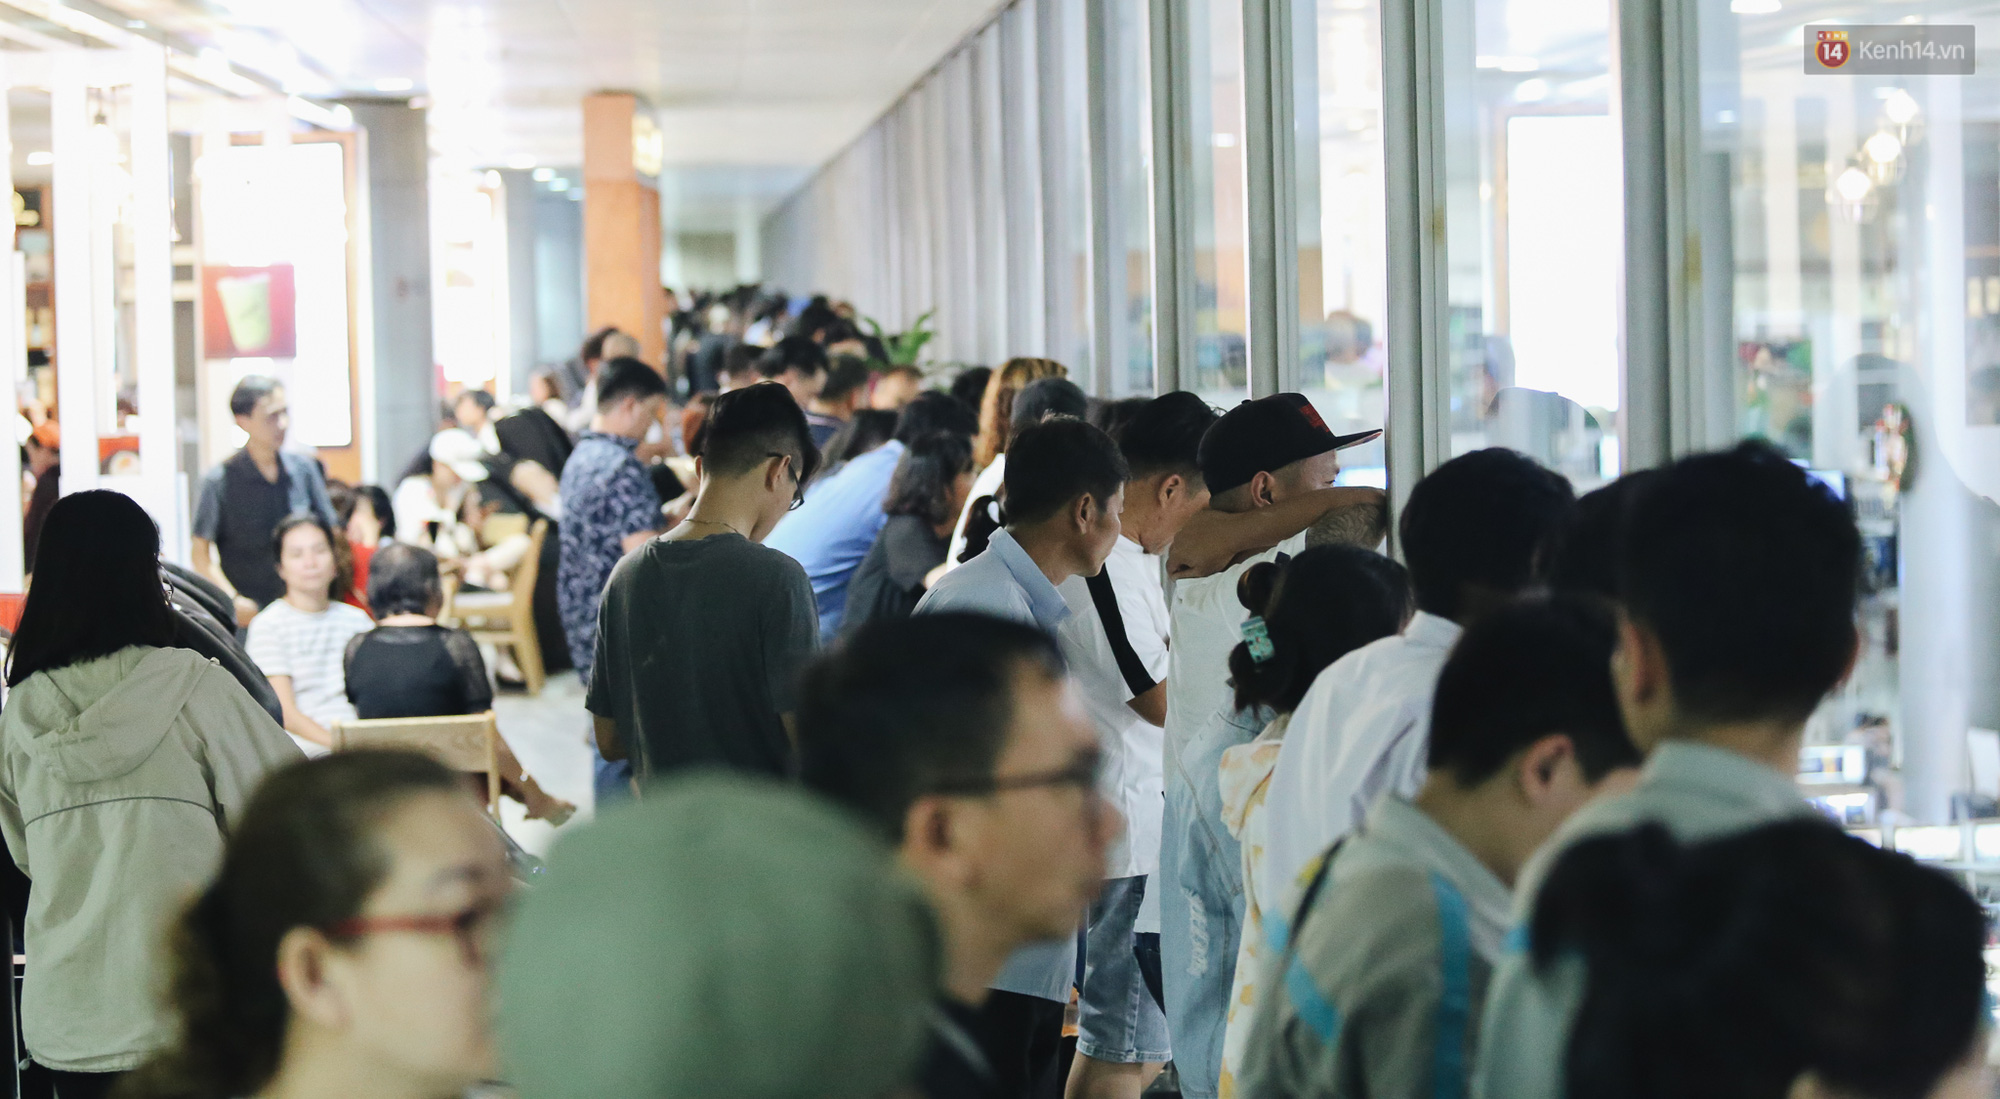 Sân bay Tân Sơn Nhất chật kín người dân đón Việt kiều về quê ăn Tết Canh Tý 2020, trẻ em và người lớn ngủ vật vờ dưới sàn - Ảnh 8.